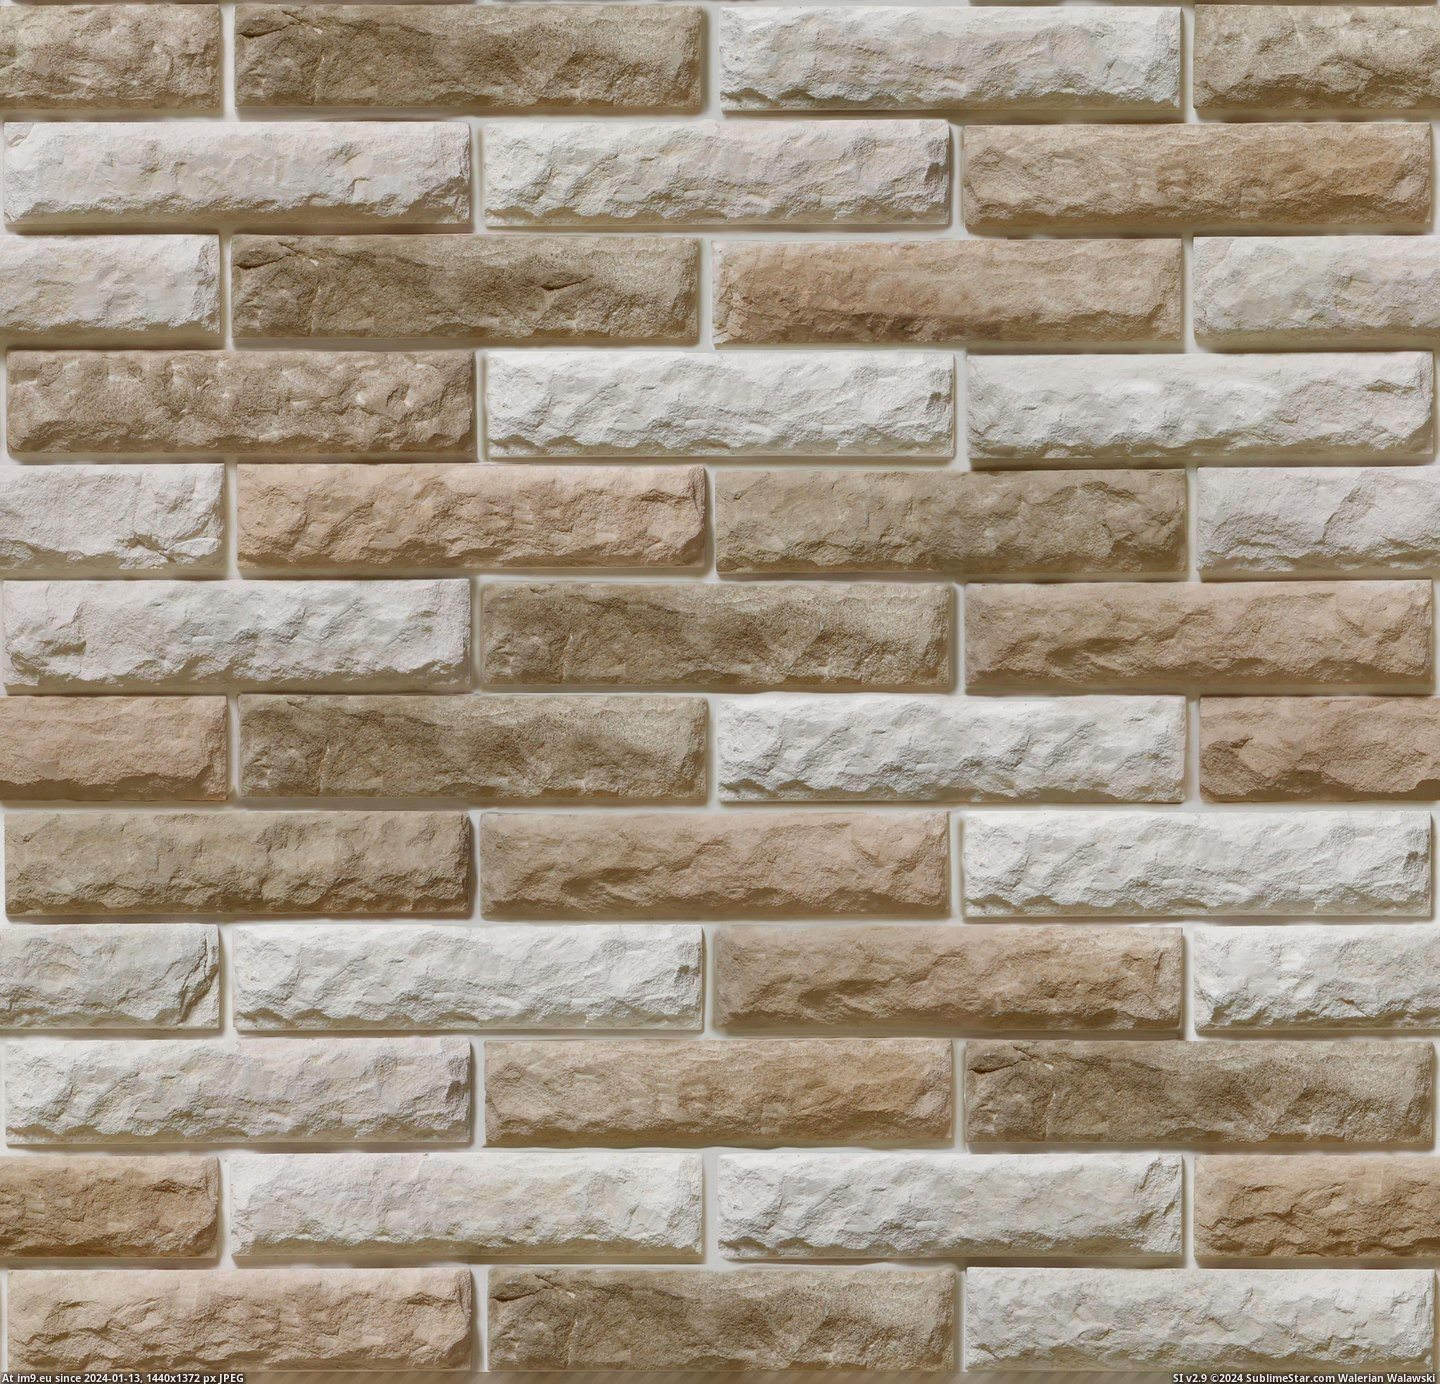 #Brick #Bristol #Texture Bristol (brick texture 1) Pic. (Obraz z album Brick walls textures and wallpapers))